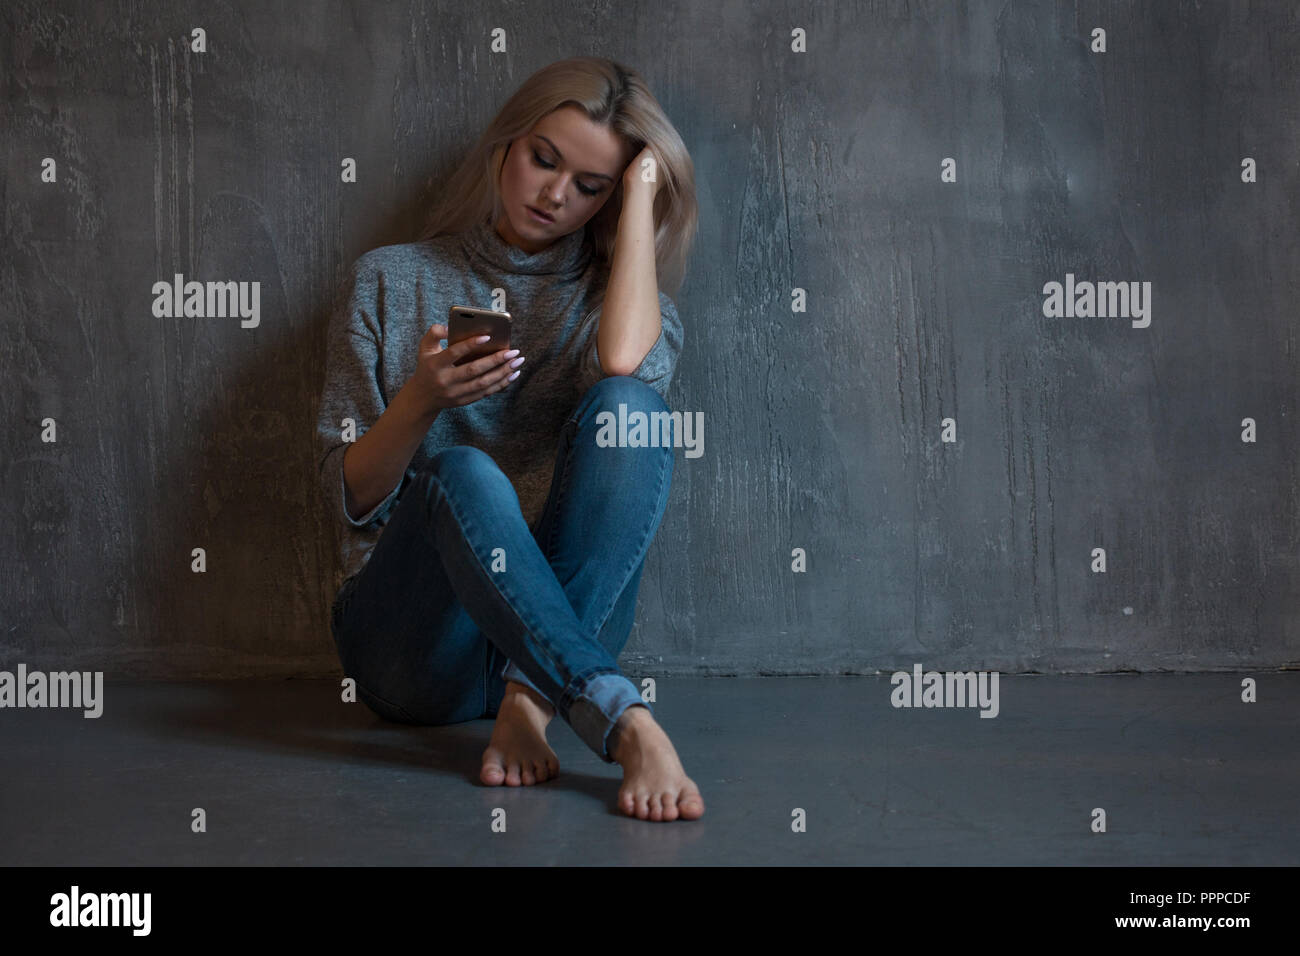 Helpline, assistenza psicologica. La sofferenza giovane donna seduta in un angolo con un telefono in mano. salute mentale, lo sfondo grigio Foto Stock